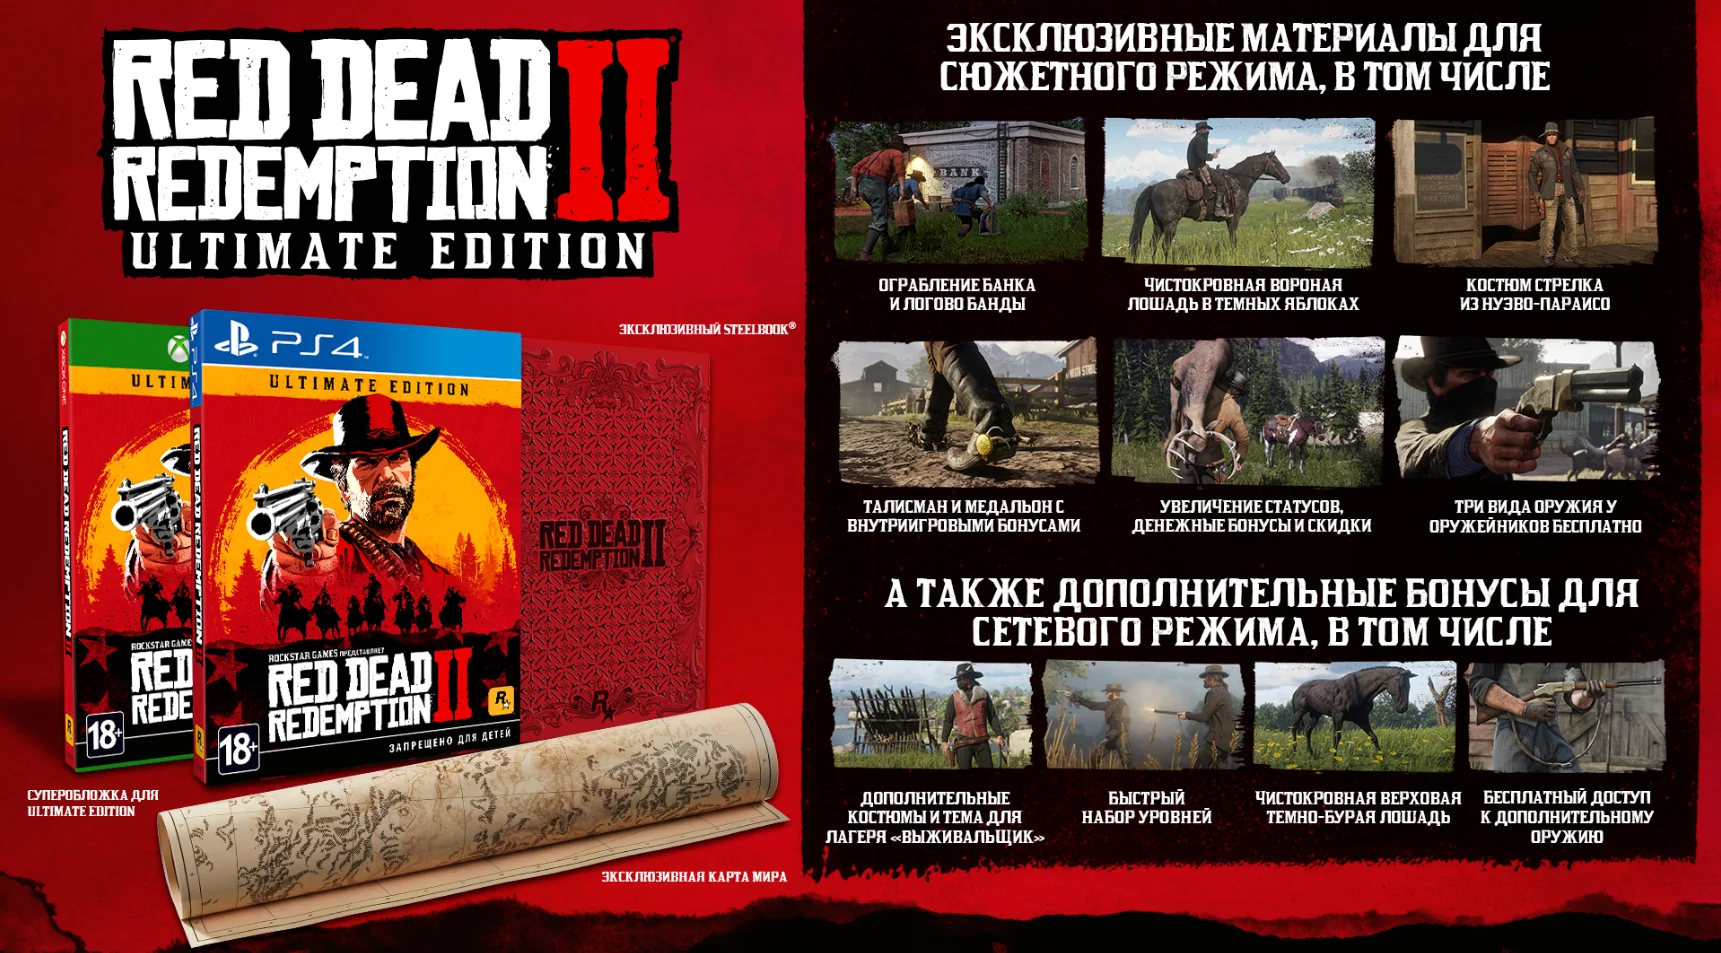 Какие бонусы получат оформившие предзаказ Red Dead Redemption 2 и обладатели специальных изданий - фото 3